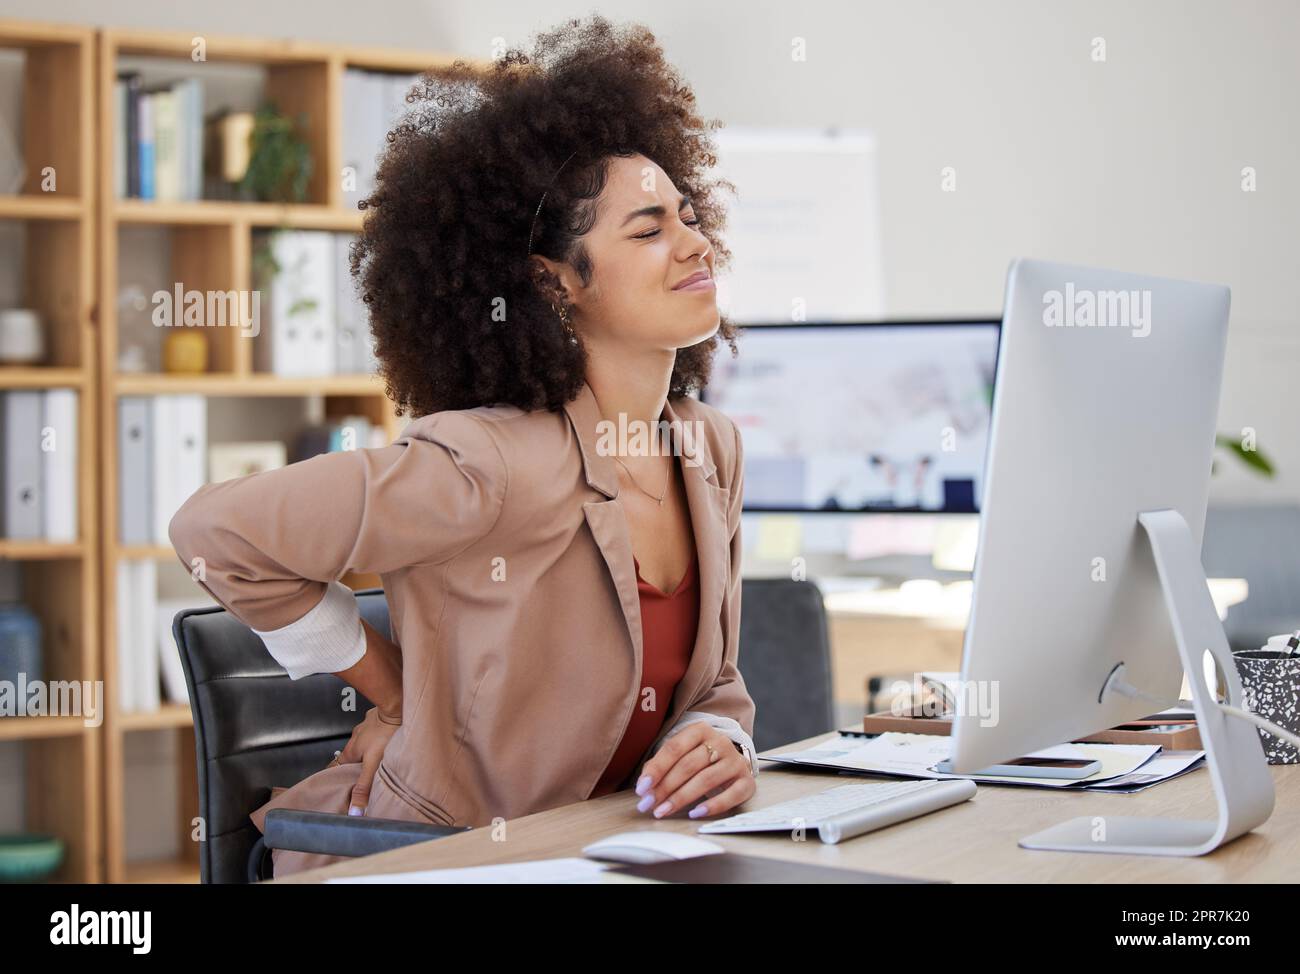 Eine junge Geschäftsfrau gemischter Rassen mit einem Afro, die Rückenschmerzen hat, während sie im Büro an ihrem Schreibtisch sitzt. Ein wunderschöner afroamerikanischer Unternehmer, der mit Krämpfen und Schmerzen kämpft Stockfoto